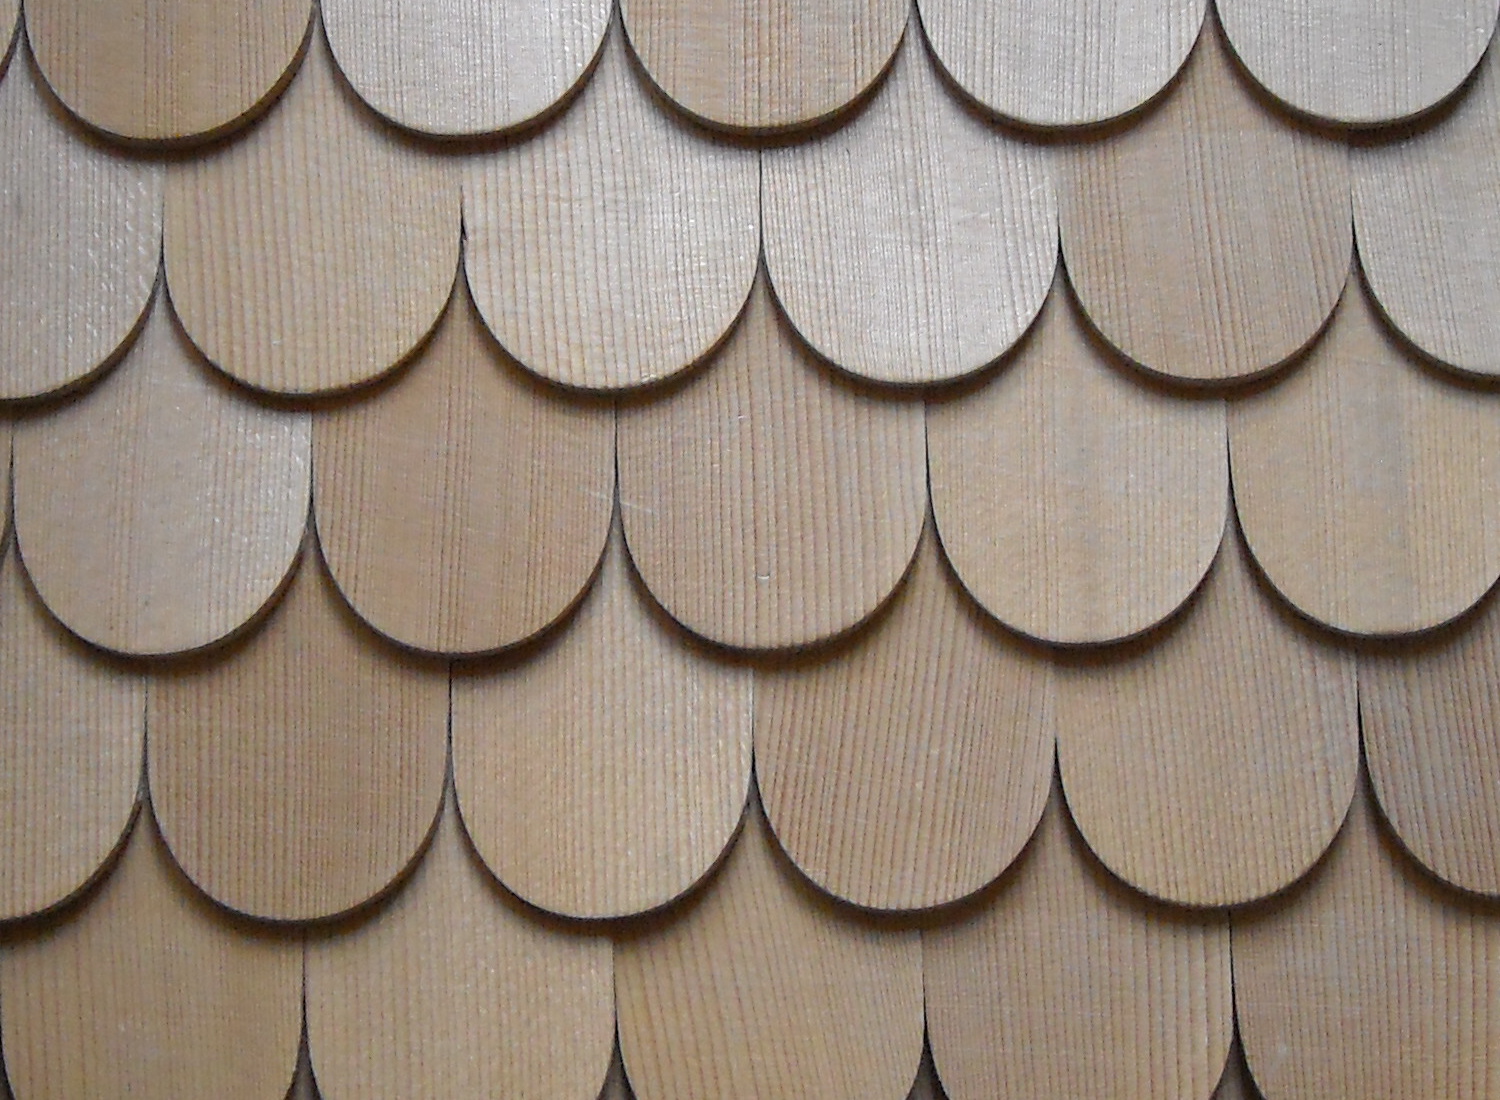 Herstellung von gespaltenen und geschnittenen Holzschindeln in der Tschechischen Republik